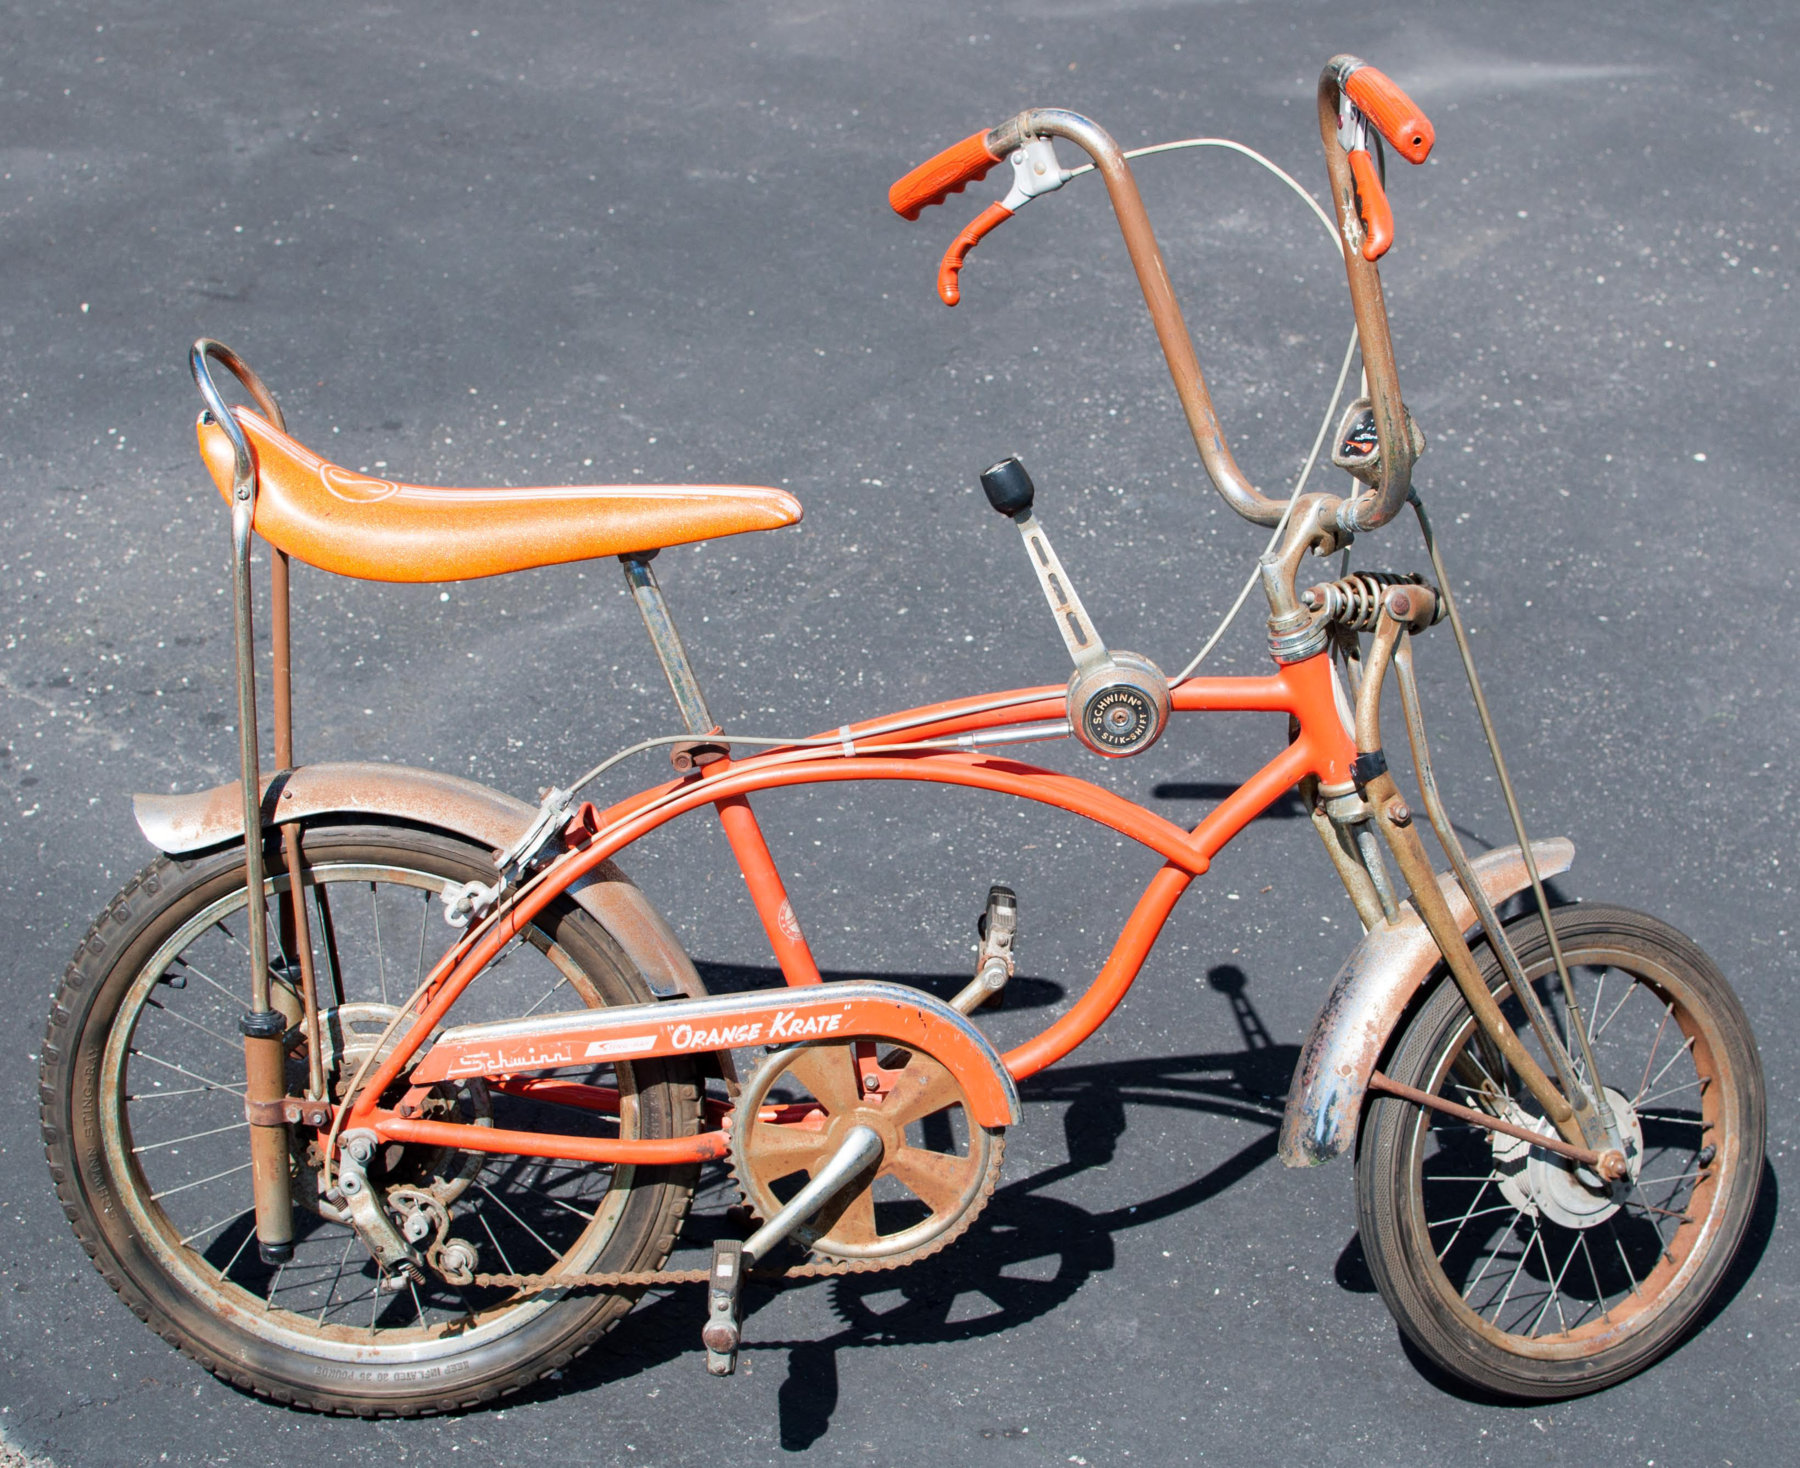 schwinn orange krate bicycle